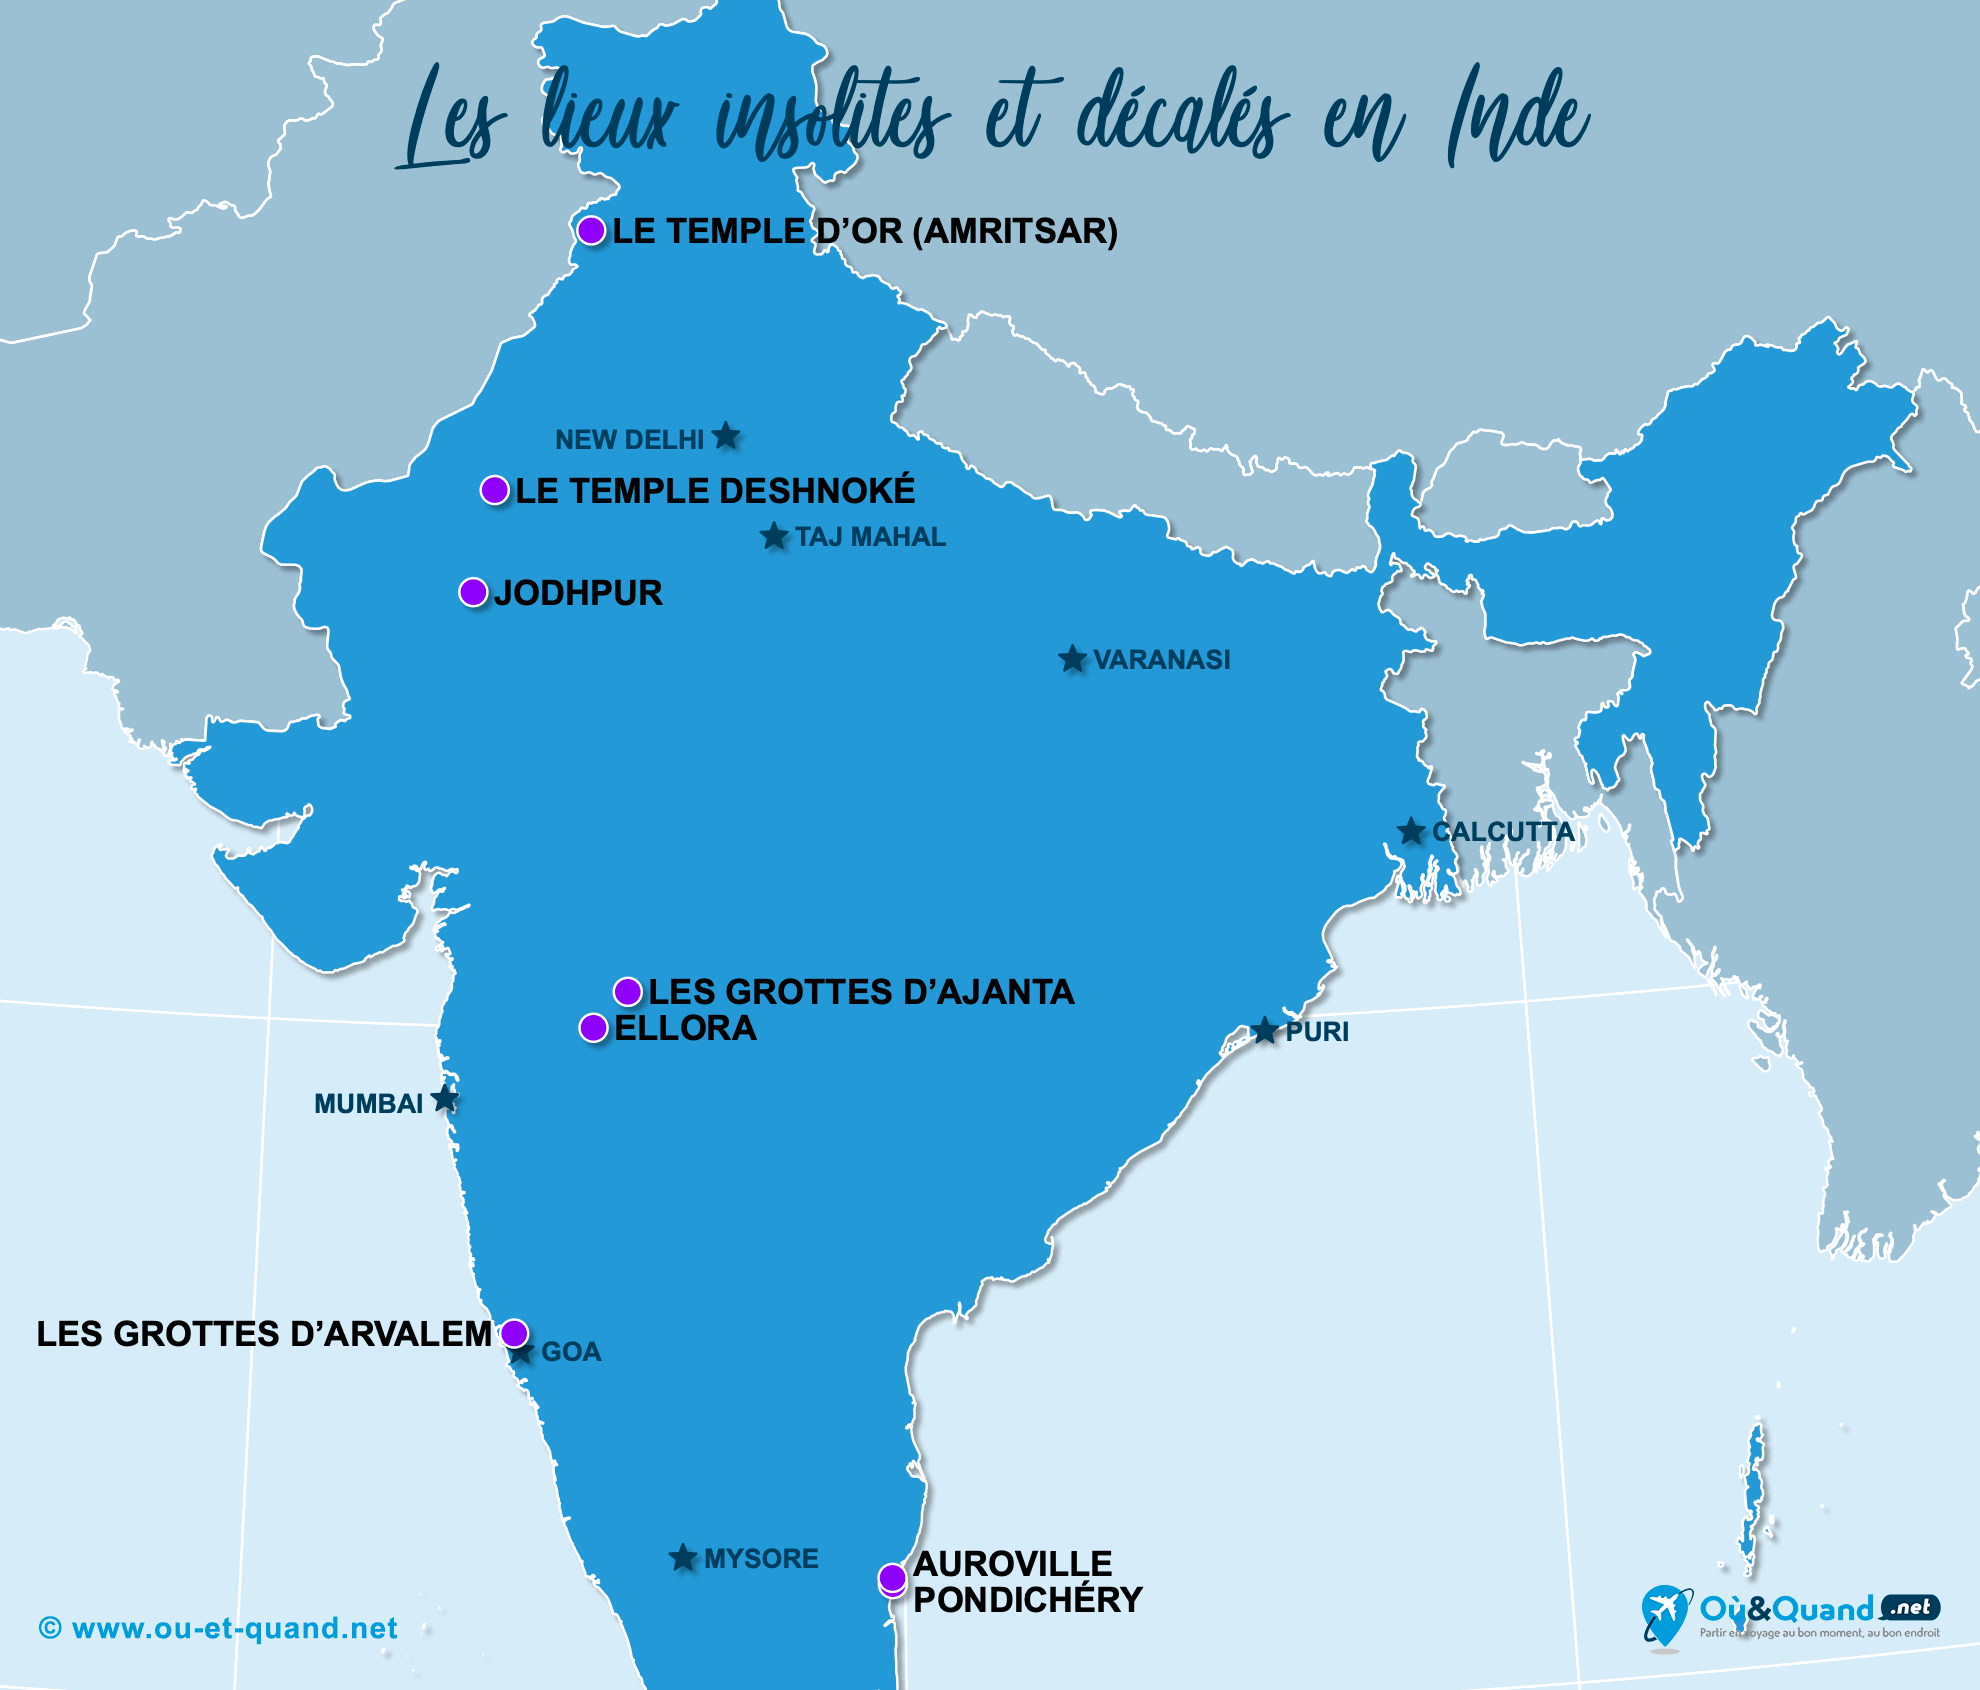 La carte des lieux insolites en Inde